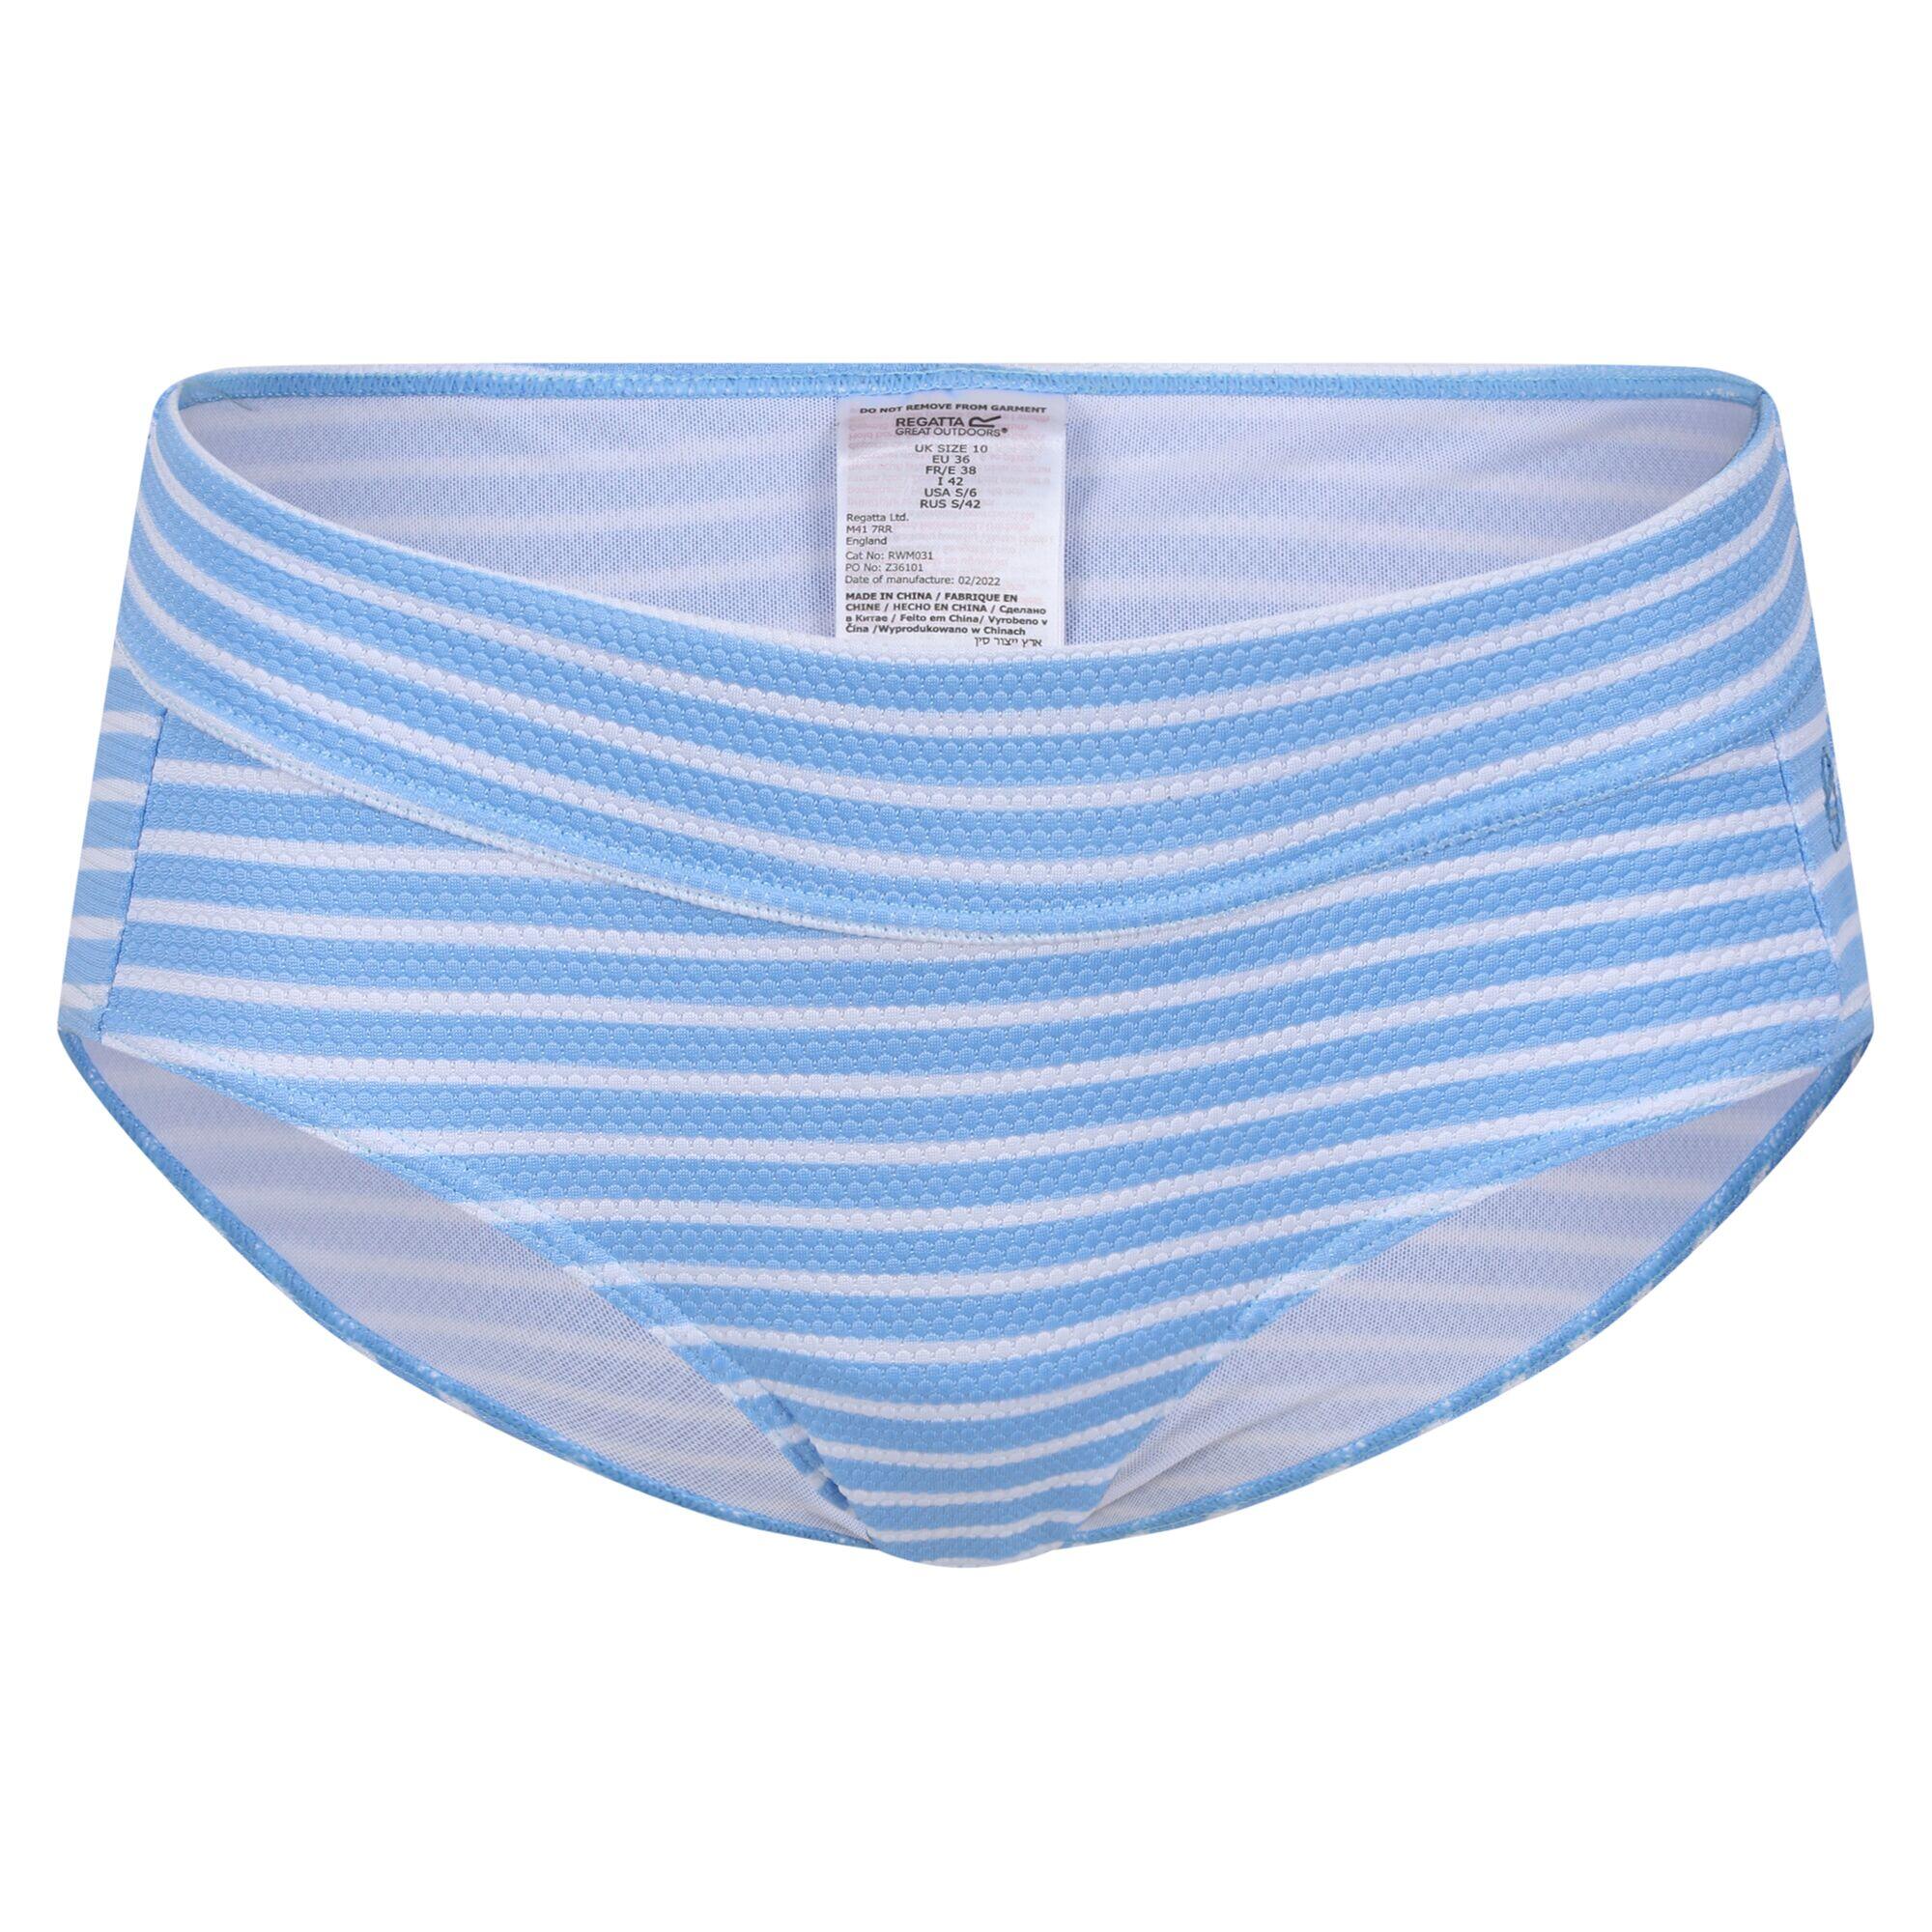 REGATTA Womens/Ladies Paloma Stripe Textured Bikini Bottoms (Elysium Blue/White)